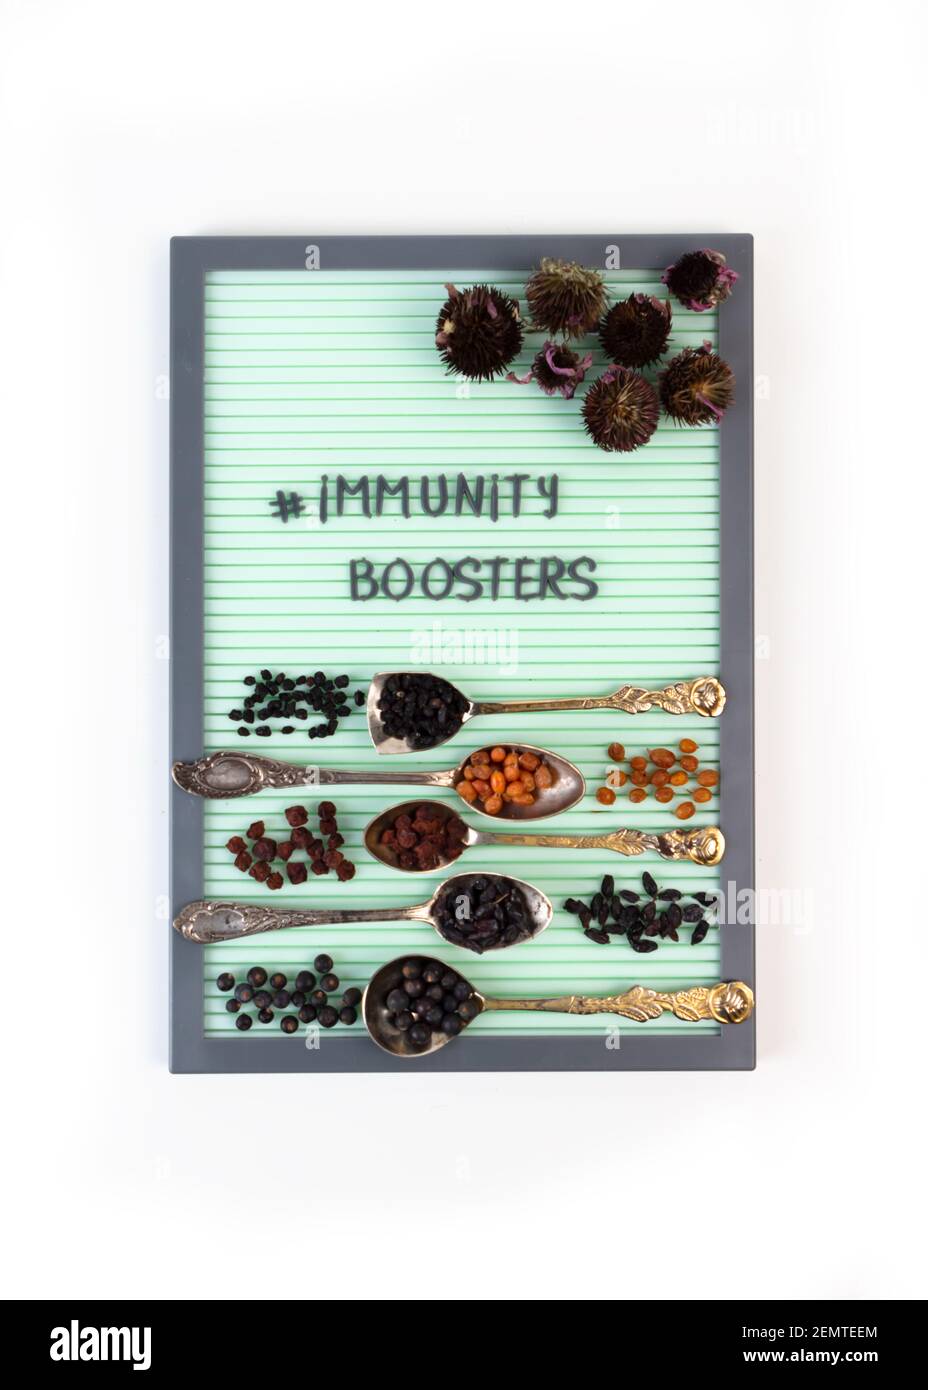 Immunitätsverstärker-Konzept. Funktionelle Ernährung zur Unterstützung eines gesunden Immunsystems. Pflanzliche Präparate und getrocknete Beeren zur Stärkung der Immunität. Stockfoto